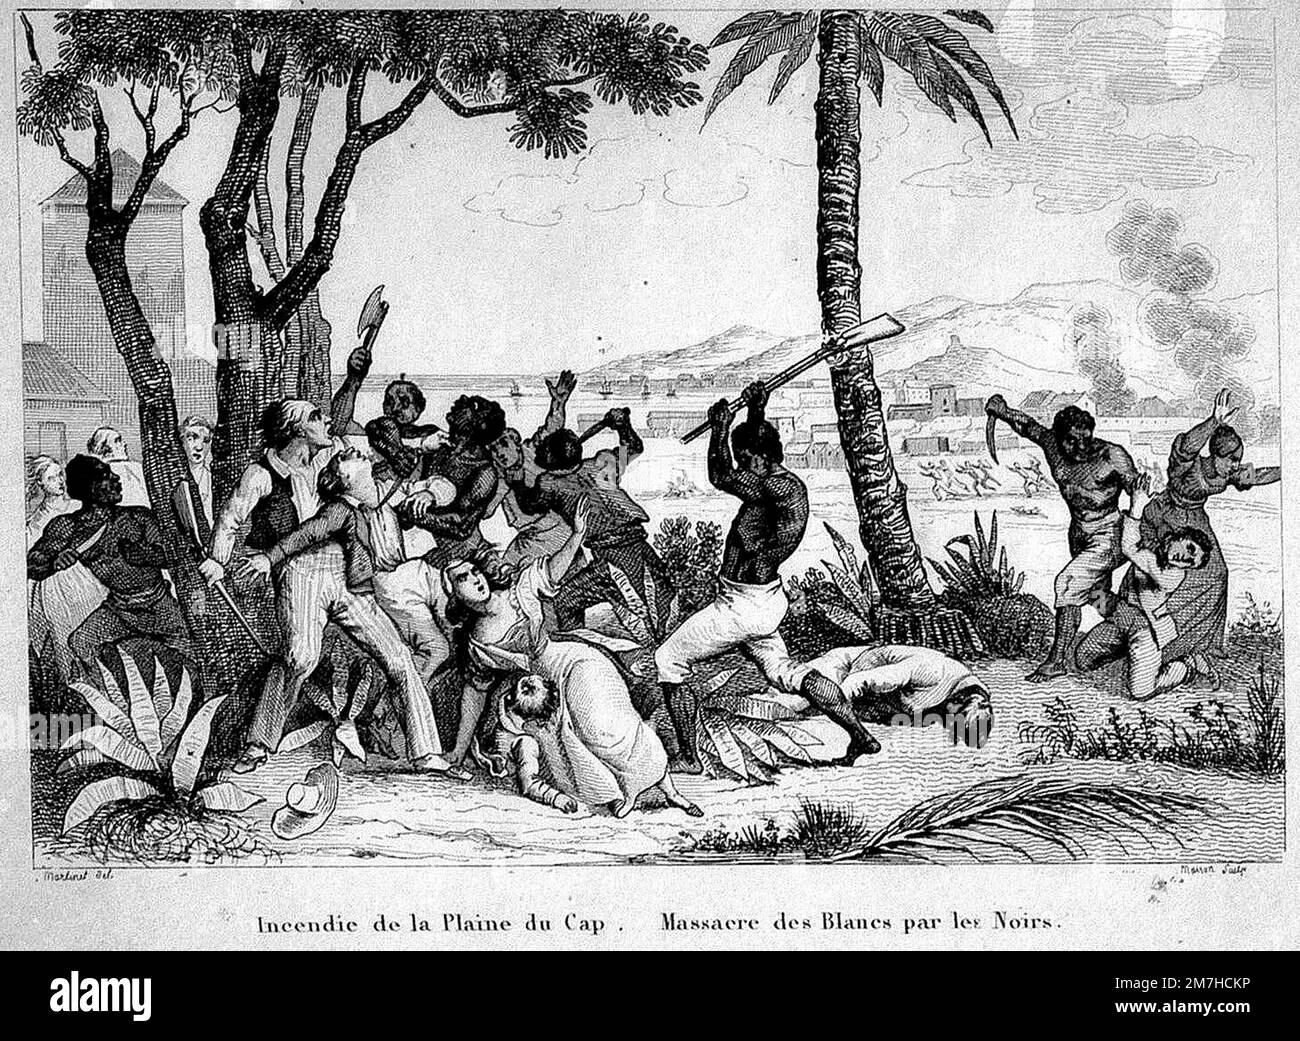 Brûlage de la Plaine du Cap - massacre de blancs par les Noirs.' Sur 22 août 1791, les esclaves incendient des plantations, ont torqué des villes et massacré la population blanche. Banque D'Images